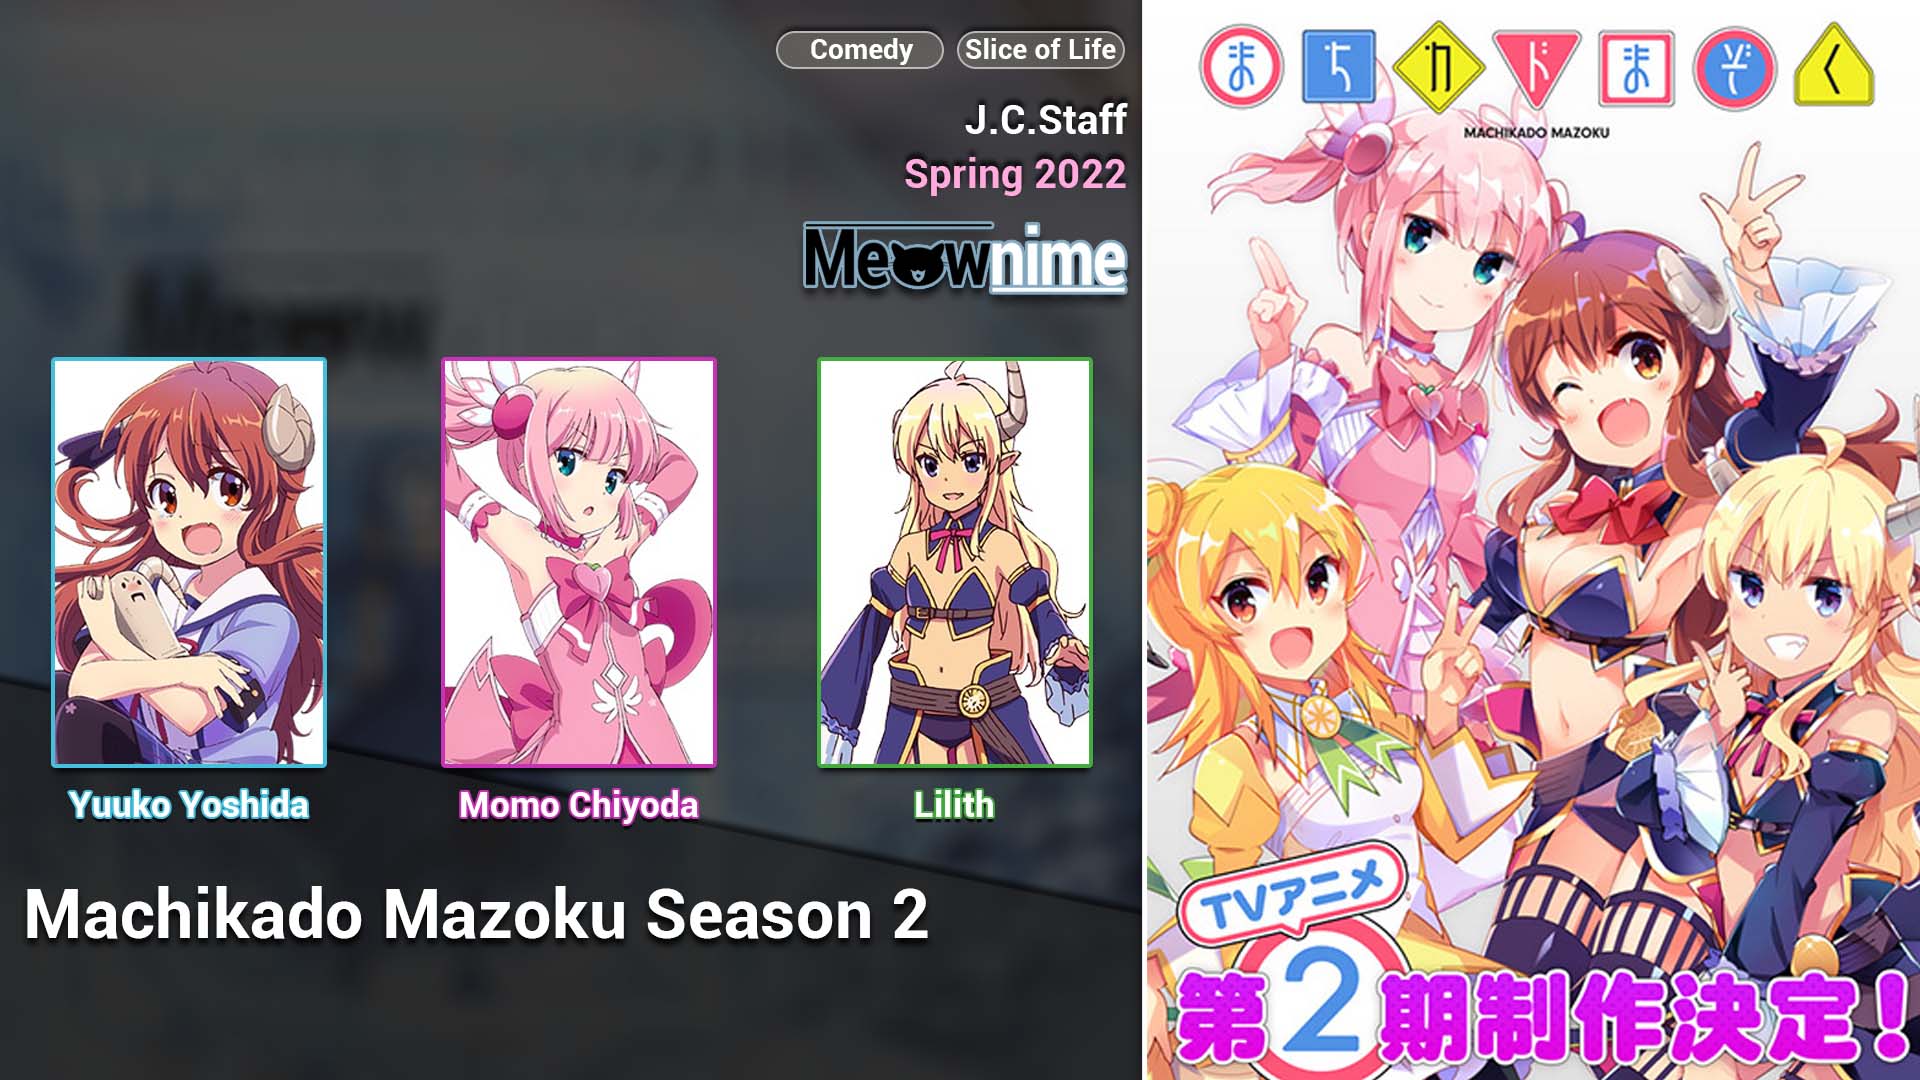 Machikado Mazoku Season 2